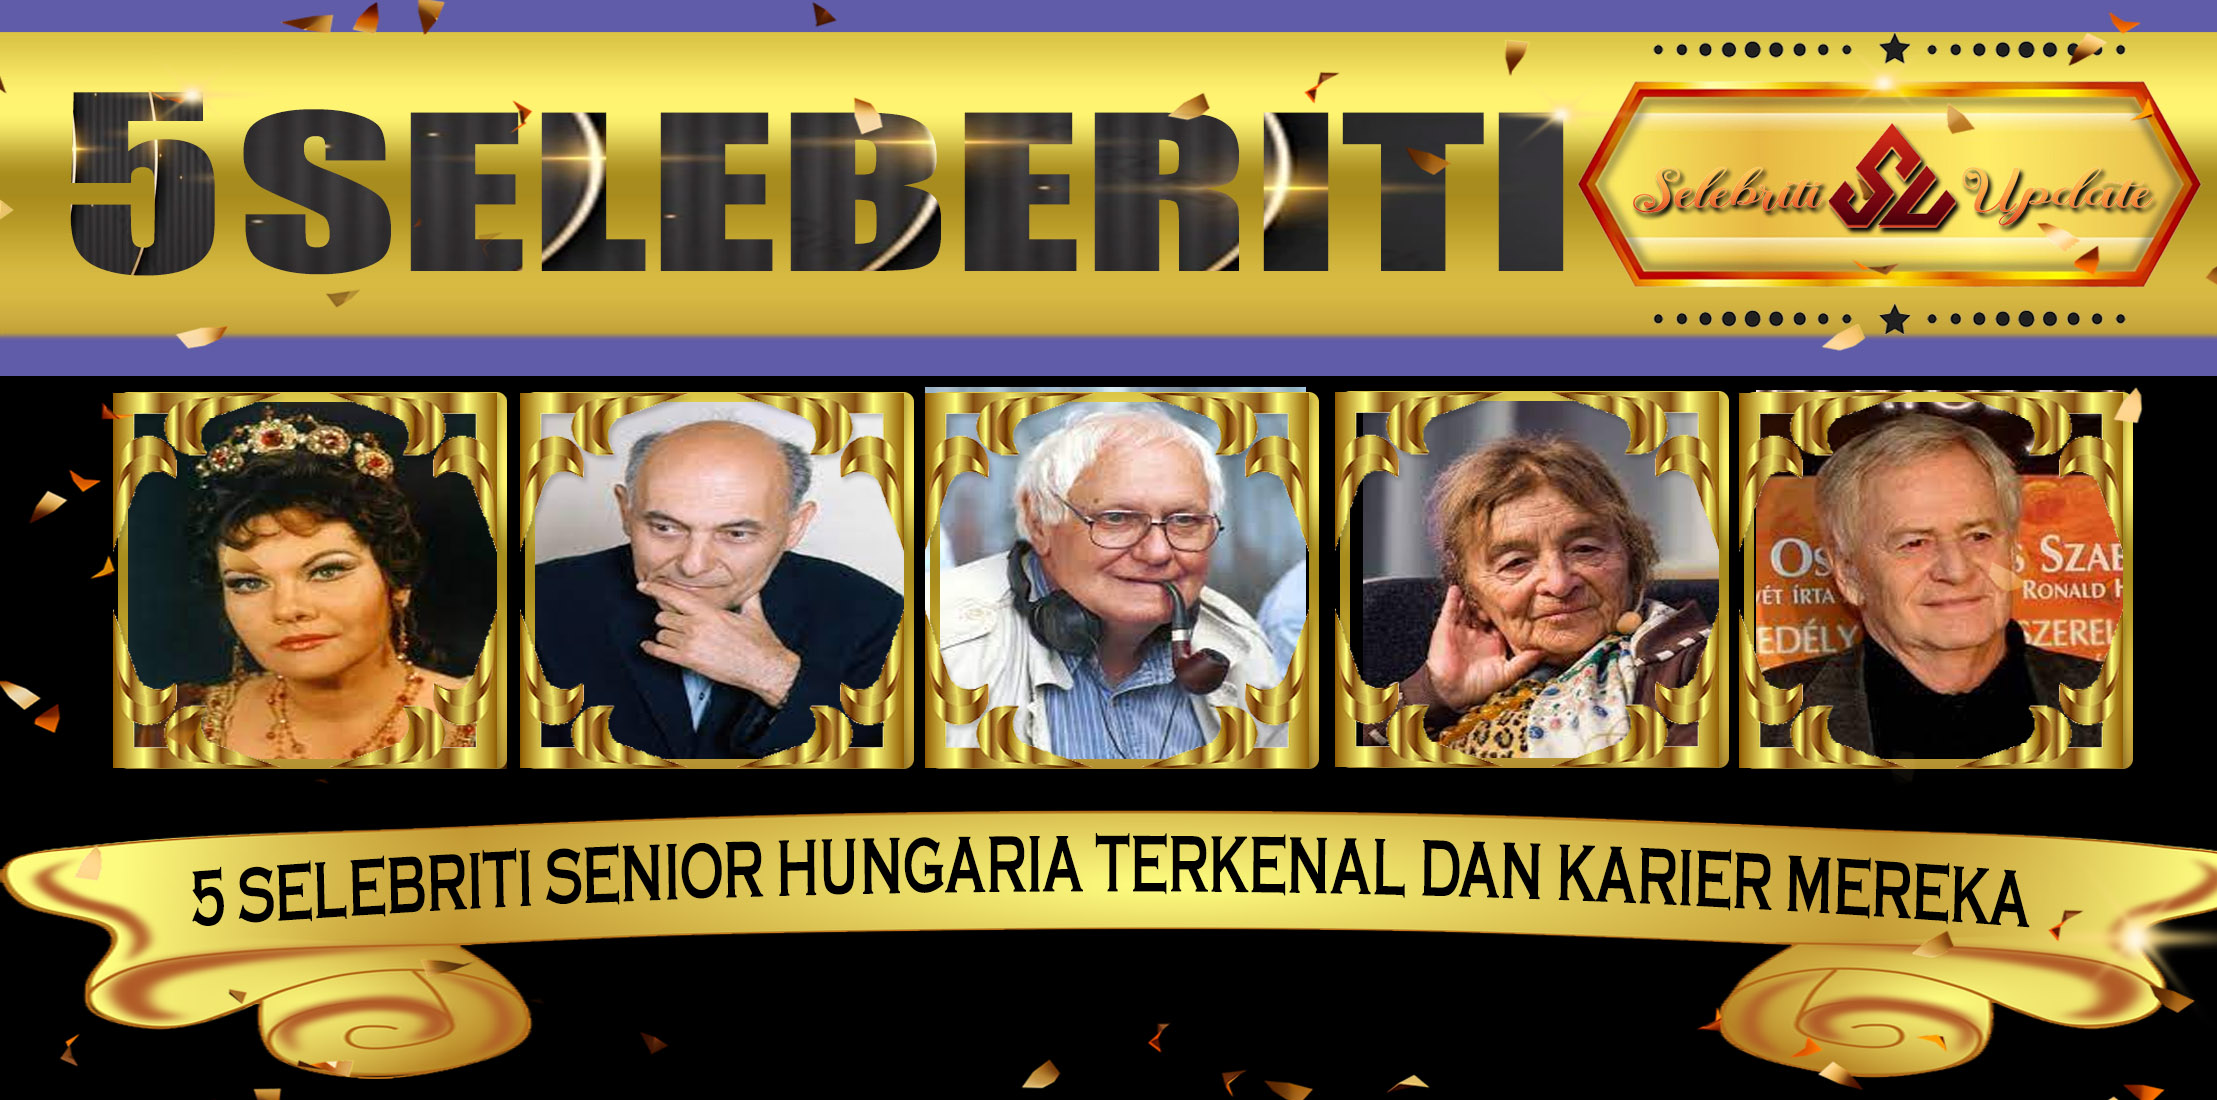 5 Selebriti Senior Hungaria Terkenal dan Karier Mereka